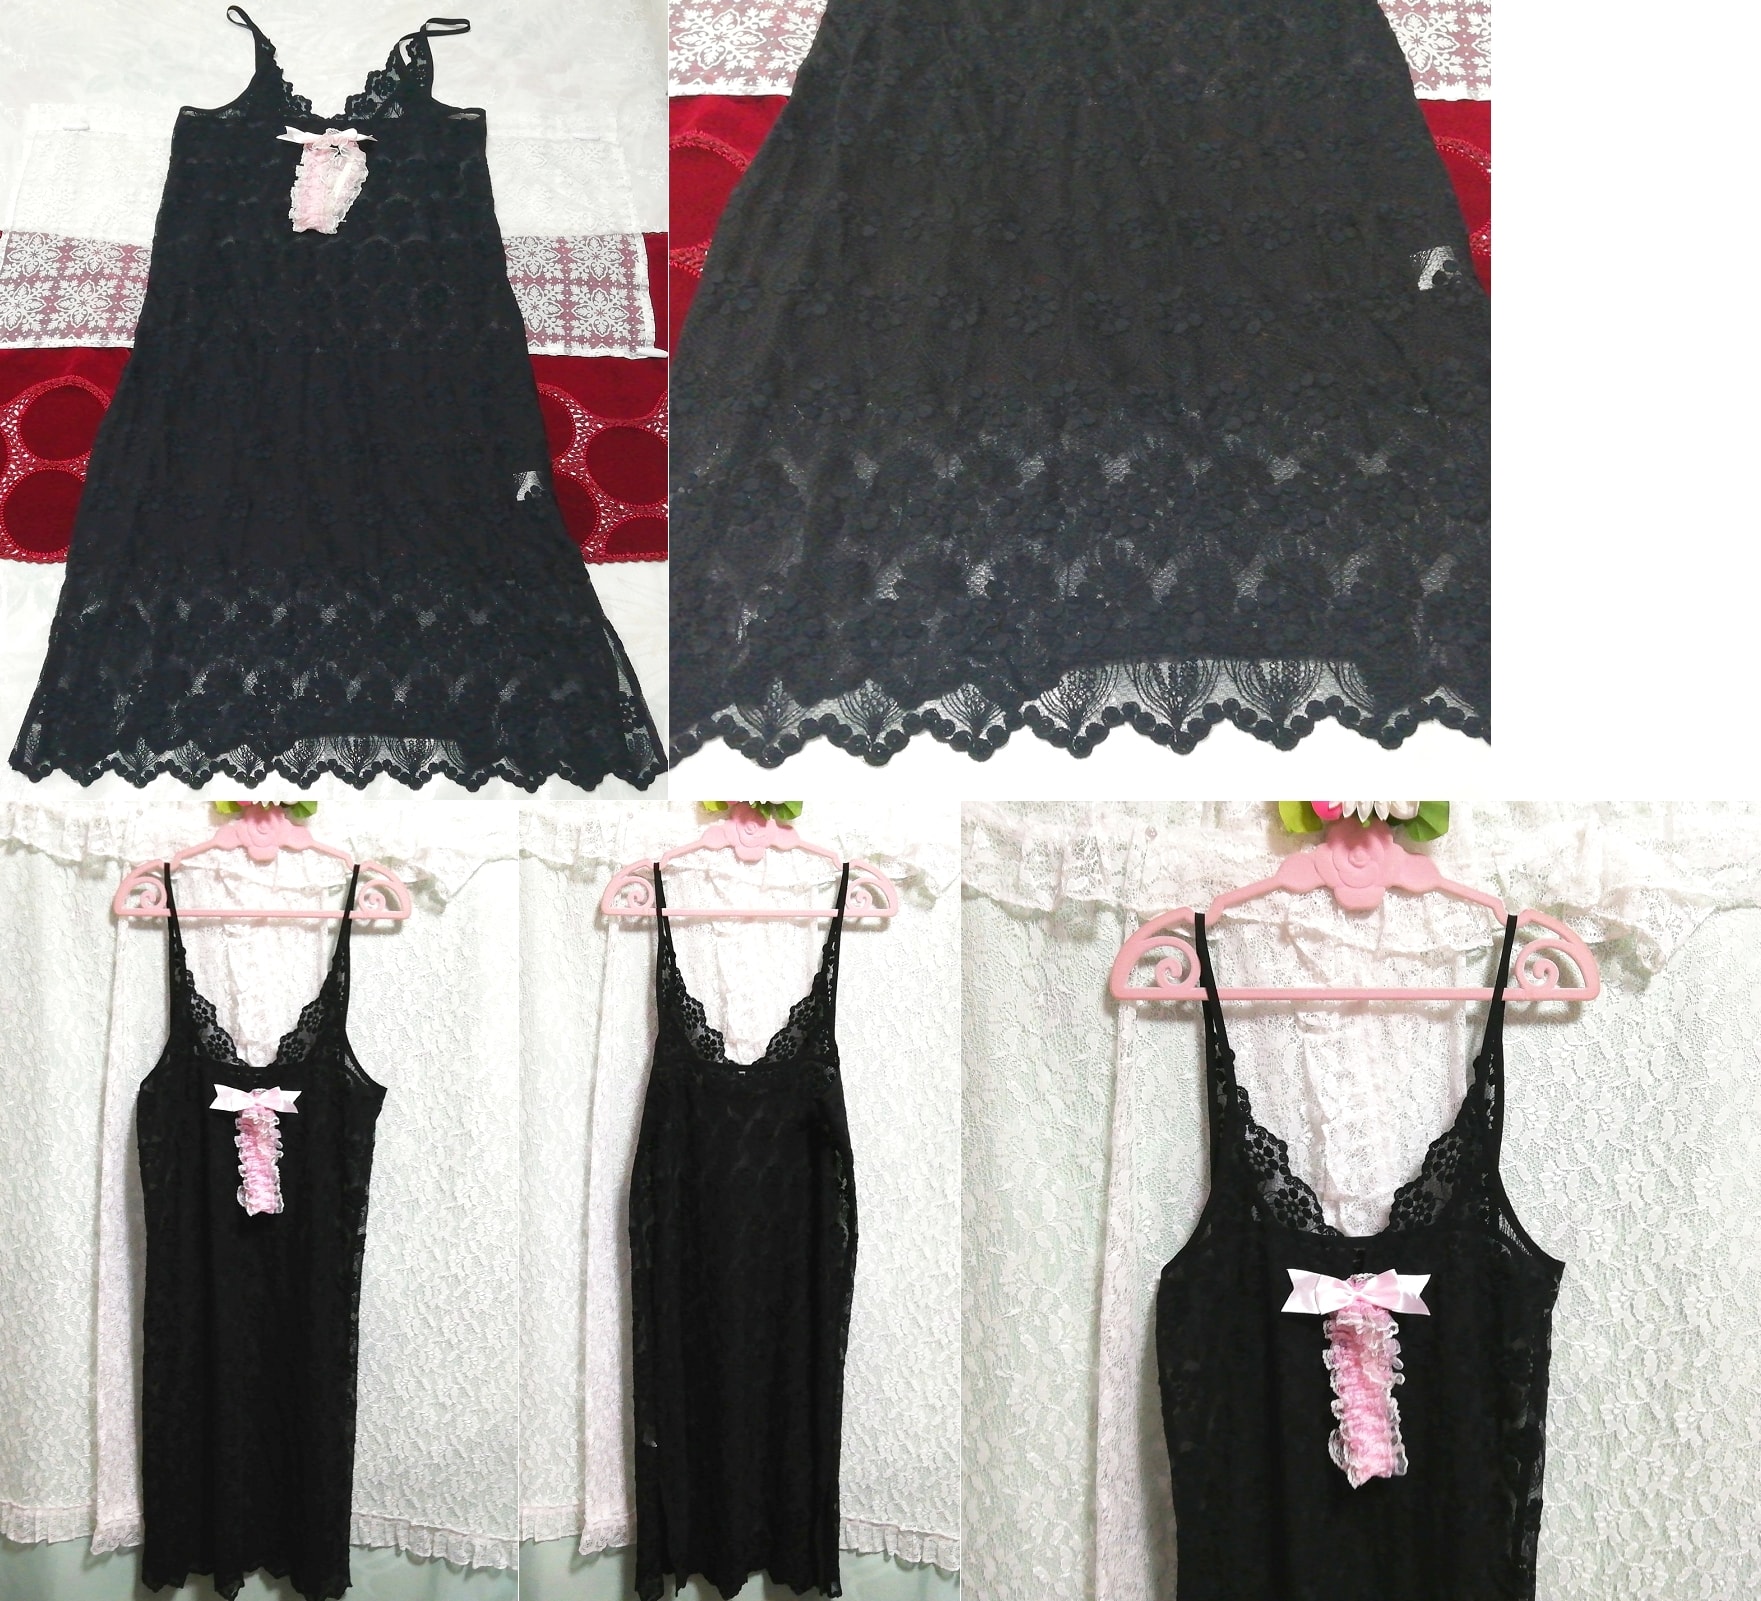 블랙 시스루 레이스 핑크 리본 네글리제 나이트가운 캐미솔 드레스, 패션, 숙녀 패션, 캐미솔